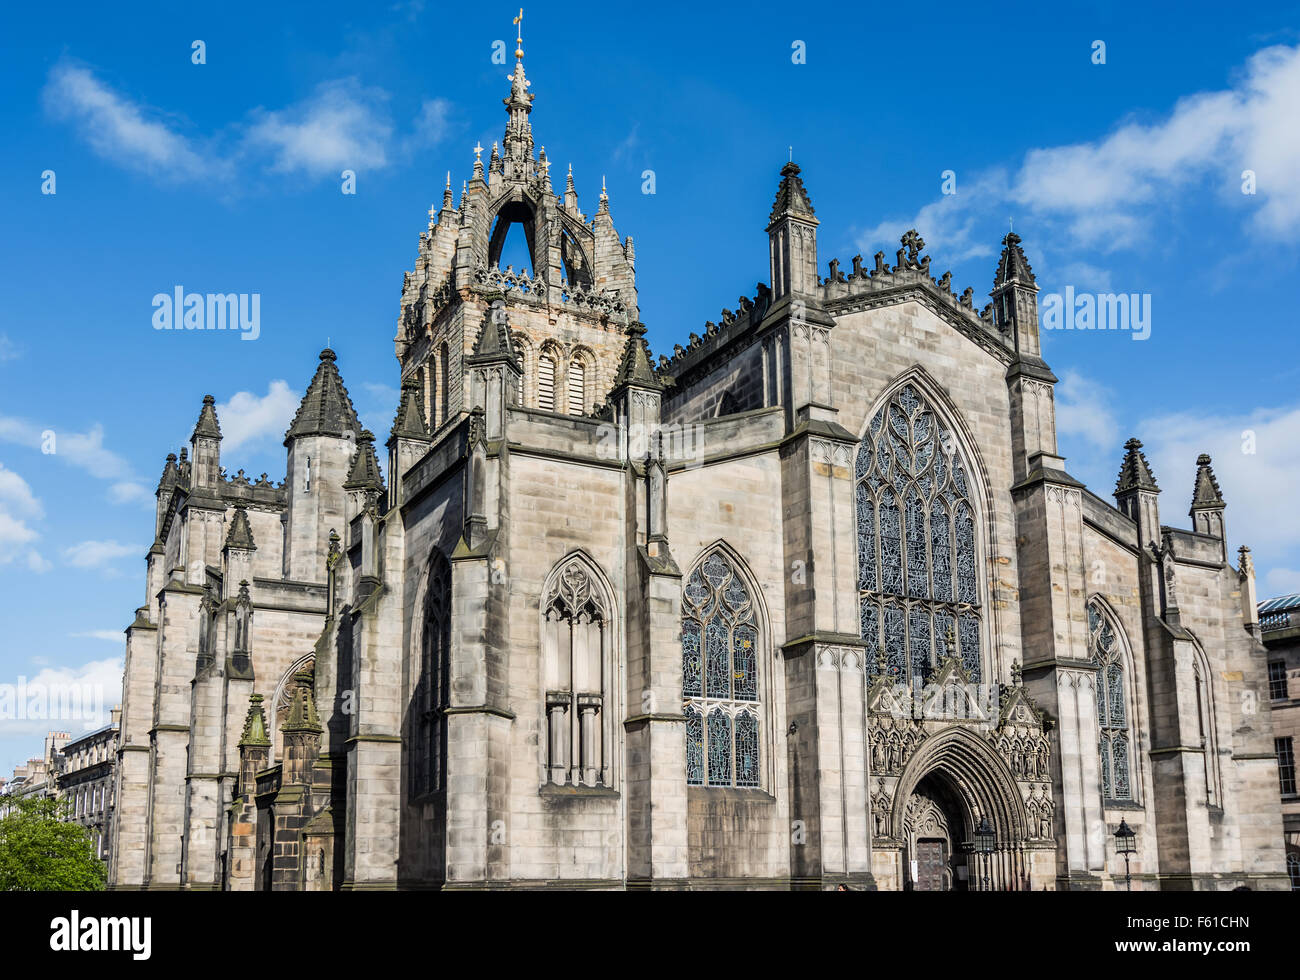 La Cattedrale di St Giles, più appropriatamente denominata alta Kirk di Edimburgo, è il principale luogo di culto della Chiesa di Scotlan Foto Stock